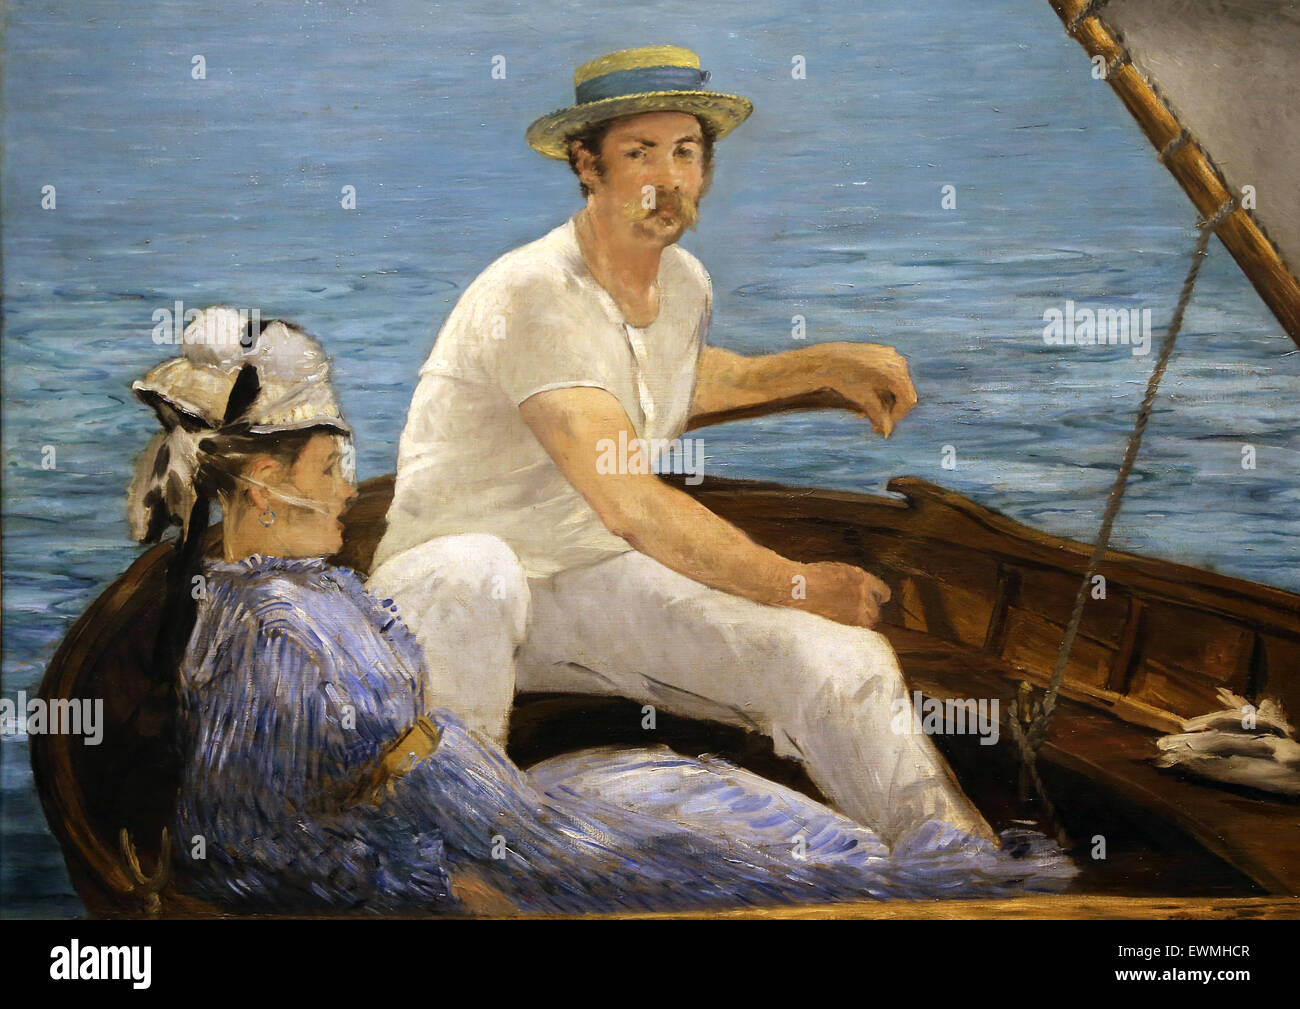 Edouard Manet (1832-1883). El pintor francés. Paseos en barco, 1874. Óleo sobre lienzo. Museo Metropolitano de Arte de Nueva York. Ee.Uu.. El impresionismo. Foto de stock